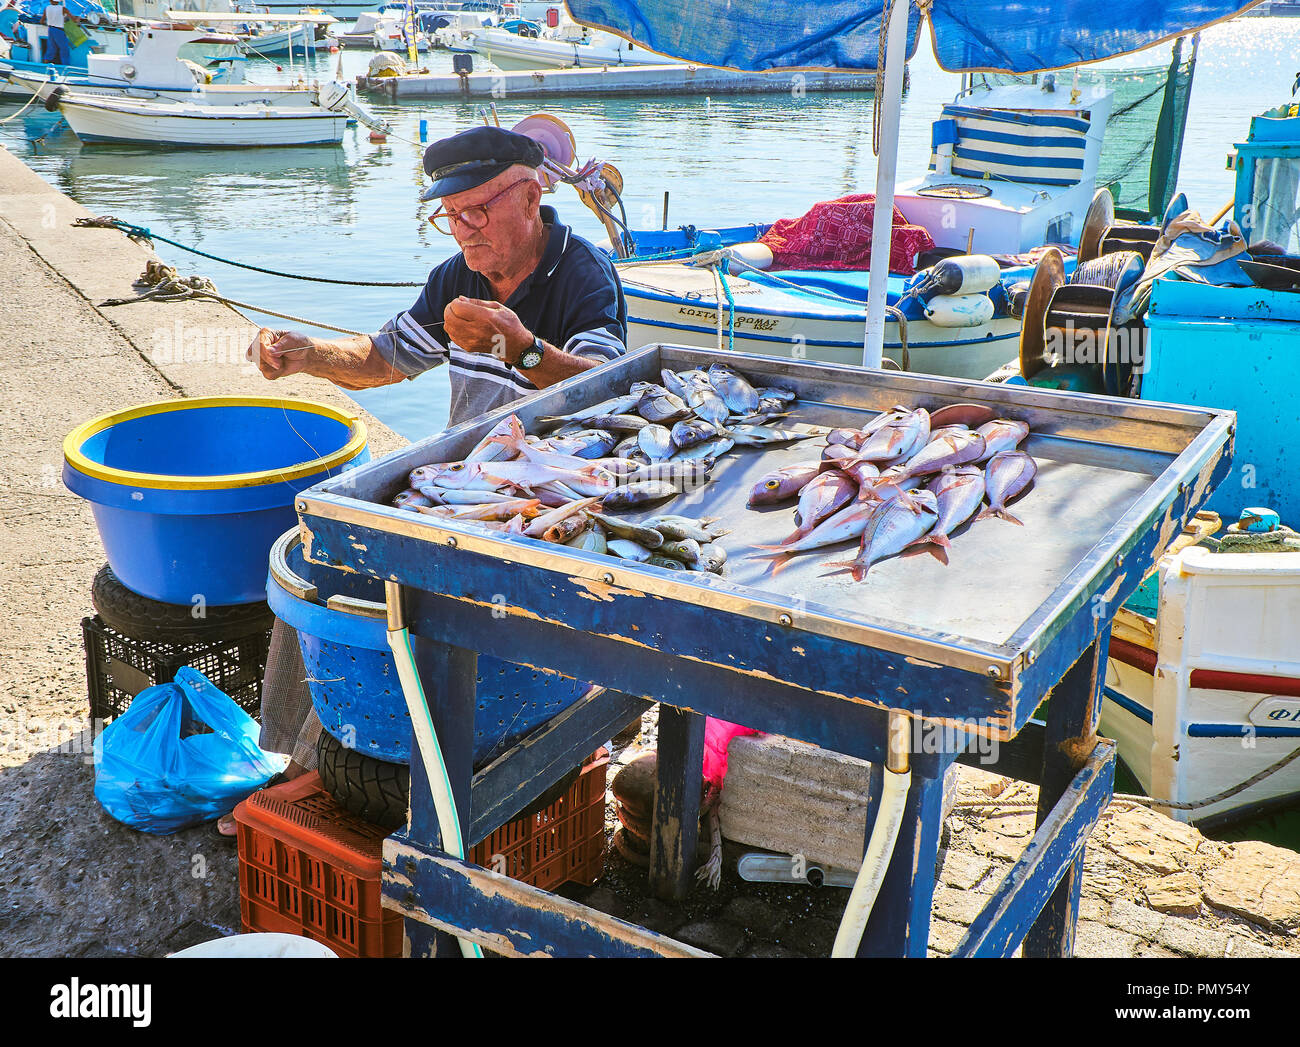 Kos, Grecia - Luglio 4, 2018. Un pescatore greco baiting ganci e vendita di pesce fresco alla Kos porto di pesca, un'isola greca del Sud Egeo regione, GRE Foto Stock